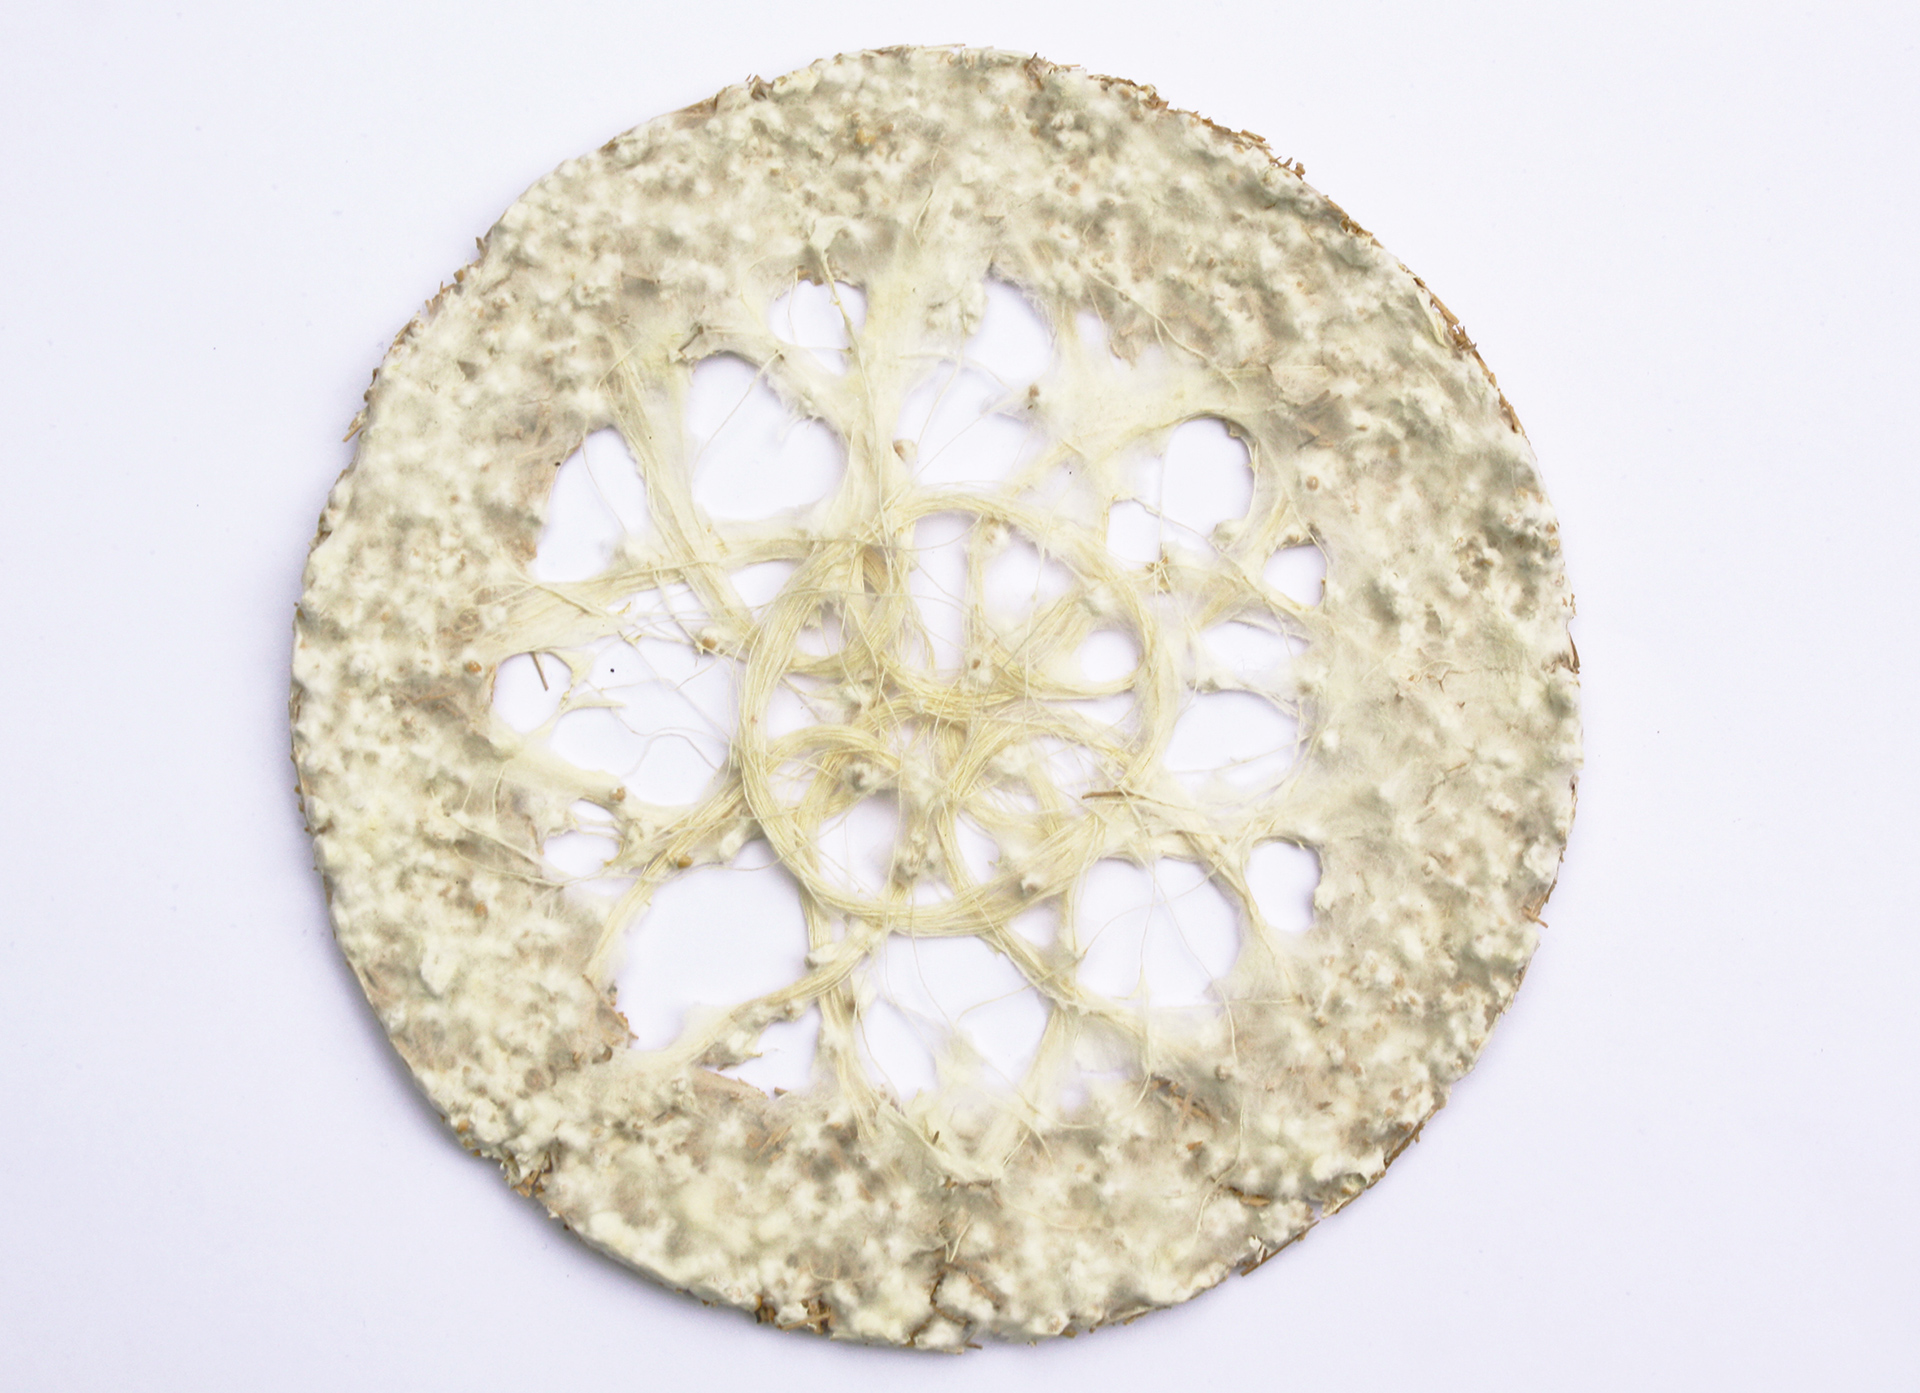 mycelium textiles lace assembly carole collet 2019